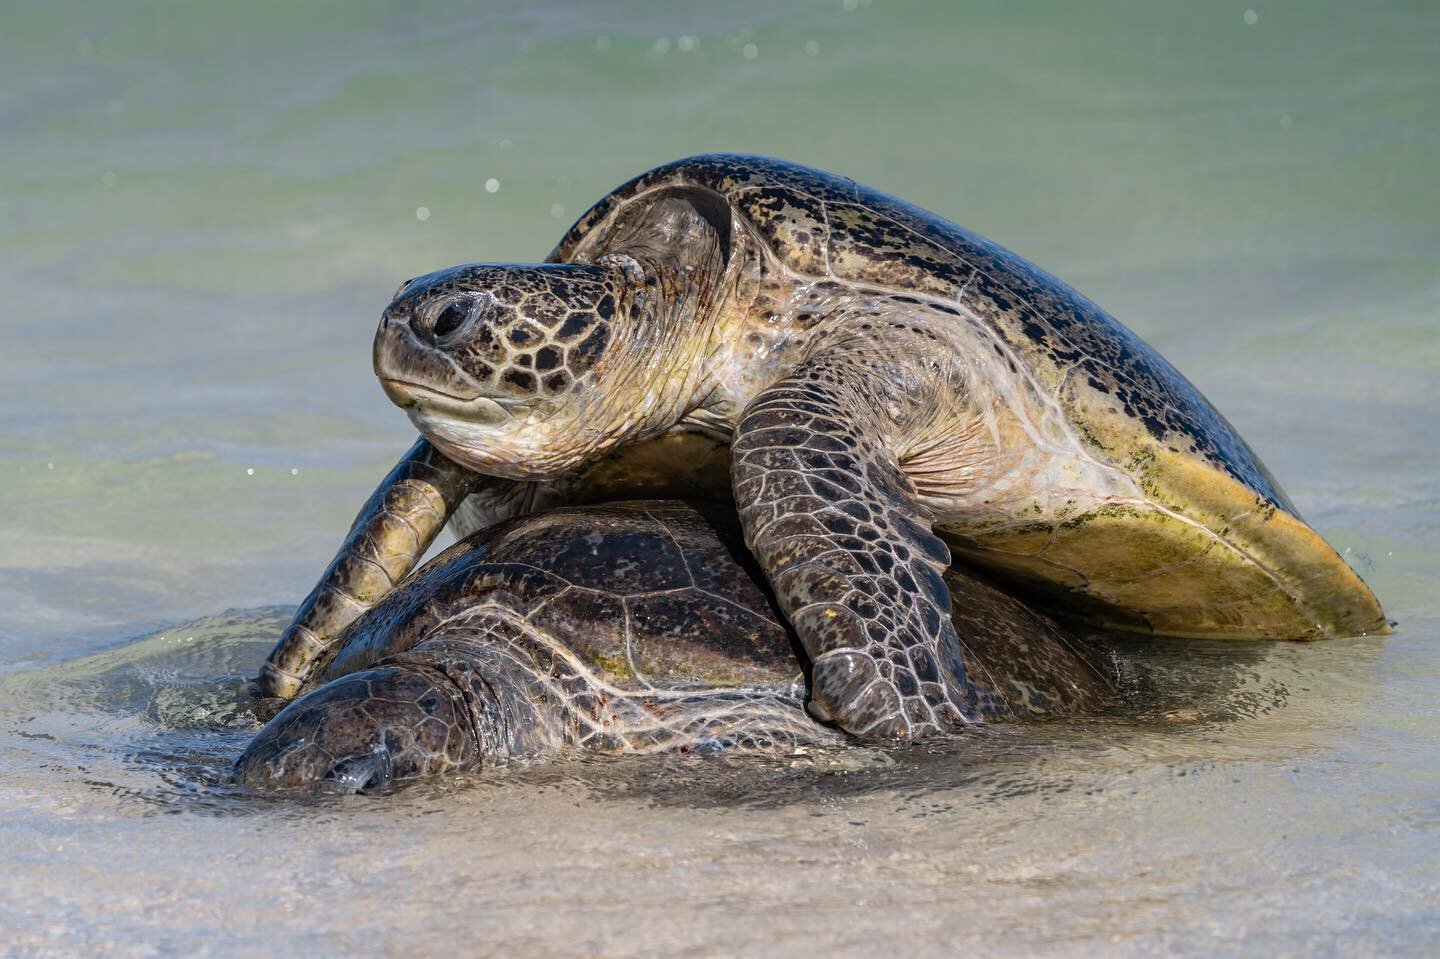 Turtle mating season on the Ningaloo 🐢
.
.

#turtle #turtleturtle #turtleneck #turtles #turtlesofinstagram #turtlelife #seaturtle #seaturtles #seaturtleconservation #seaturtlelove #turtletuesday #ningaloo #ningalooreef #ningaloodiscovery #ningalooco